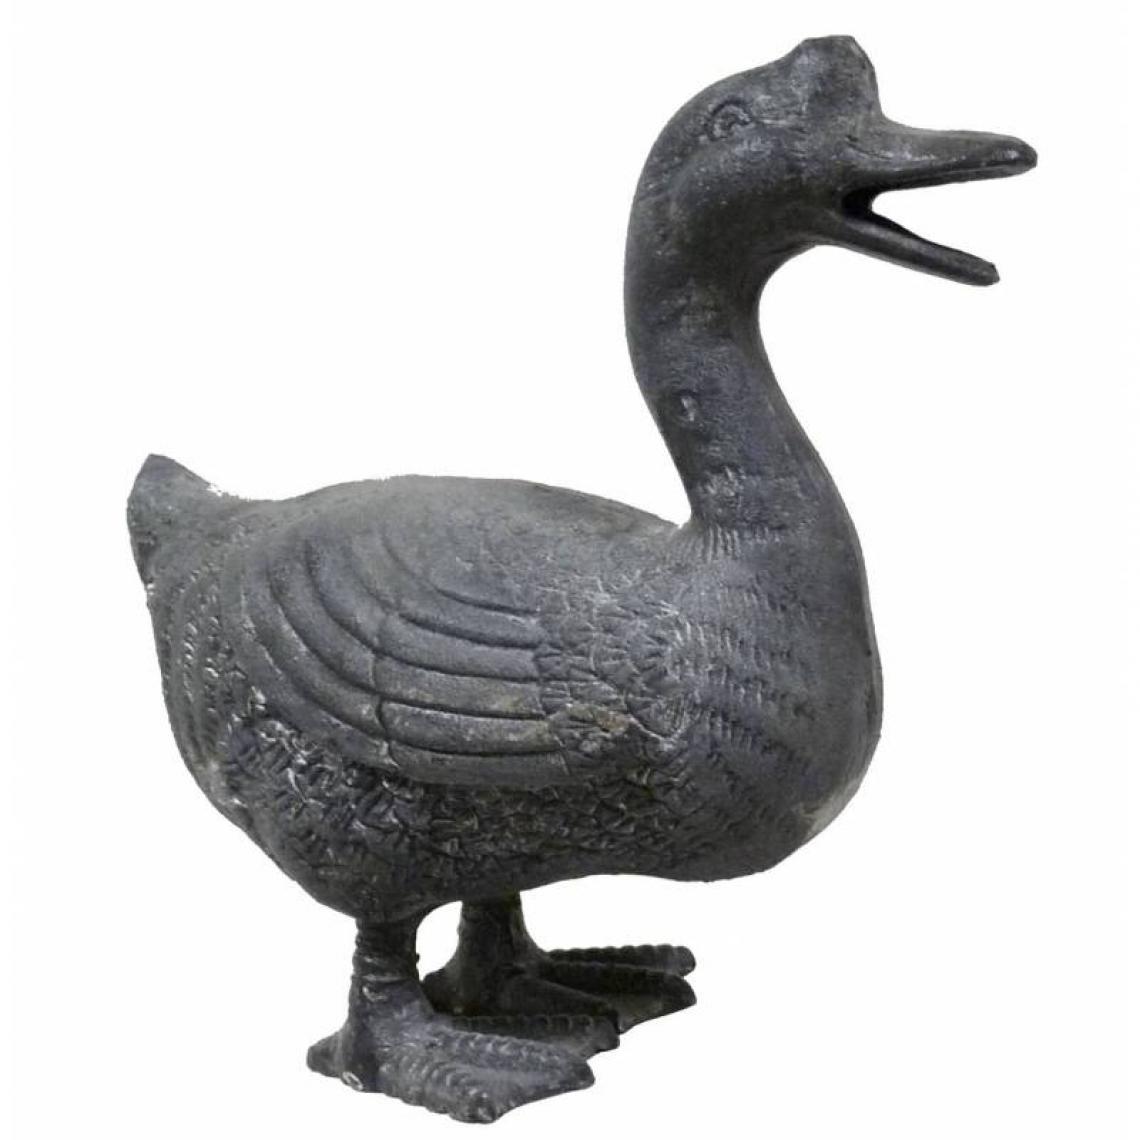 L'Héritier Du Temps - Cane ou Canard Statuette Oiseau Volatile en Fonte Grise 14x24x27cm - Petite déco d'exterieur